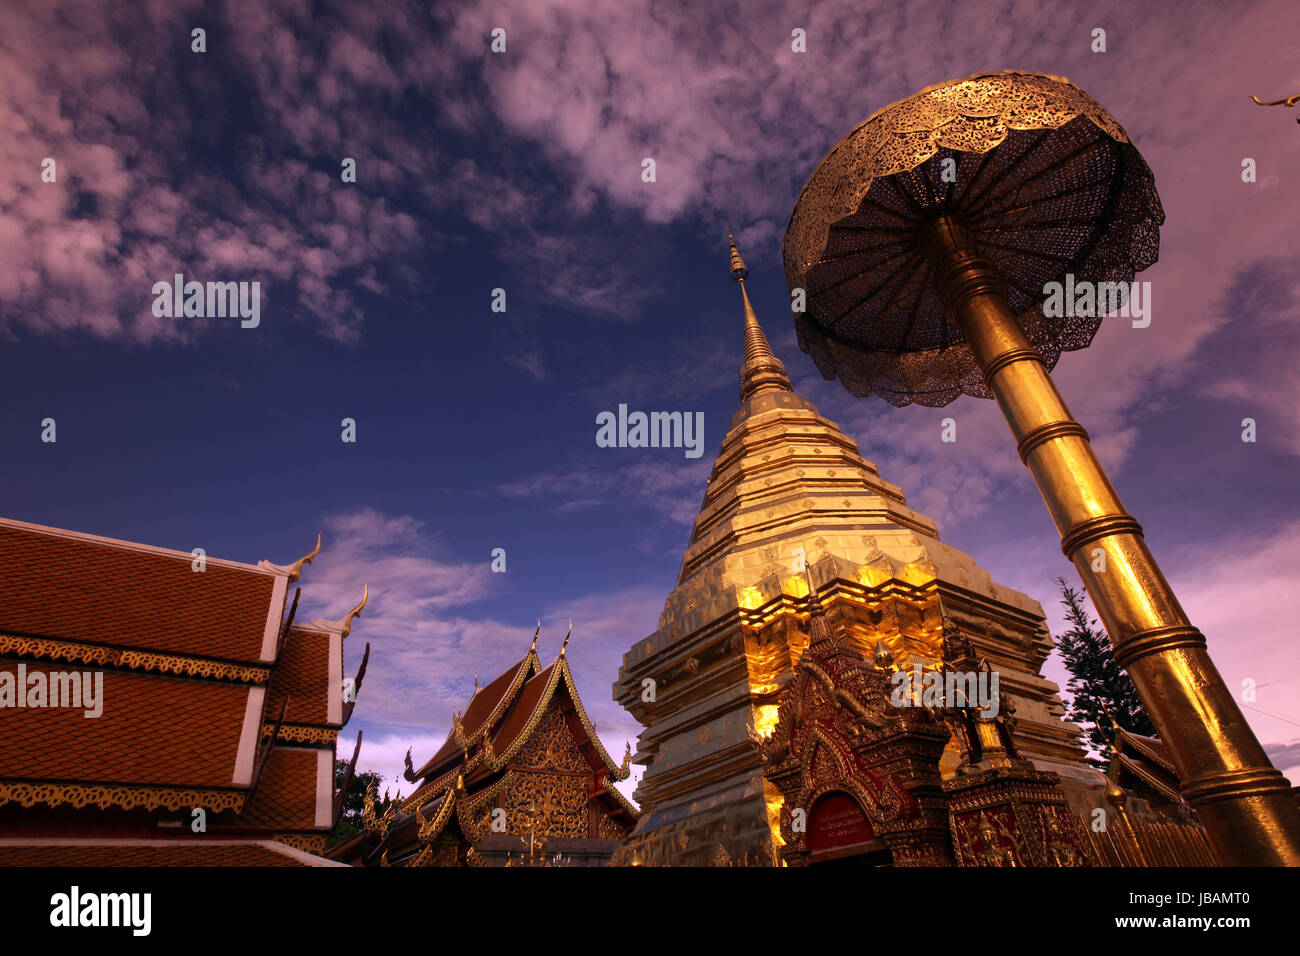 Der Chedi der Tempel Anlage des Wat Phra That Doi Suthep bei Chiang Mai in der Provinz Chiang Mai im Norden von Thailand in Suedostasien. Stock Photo